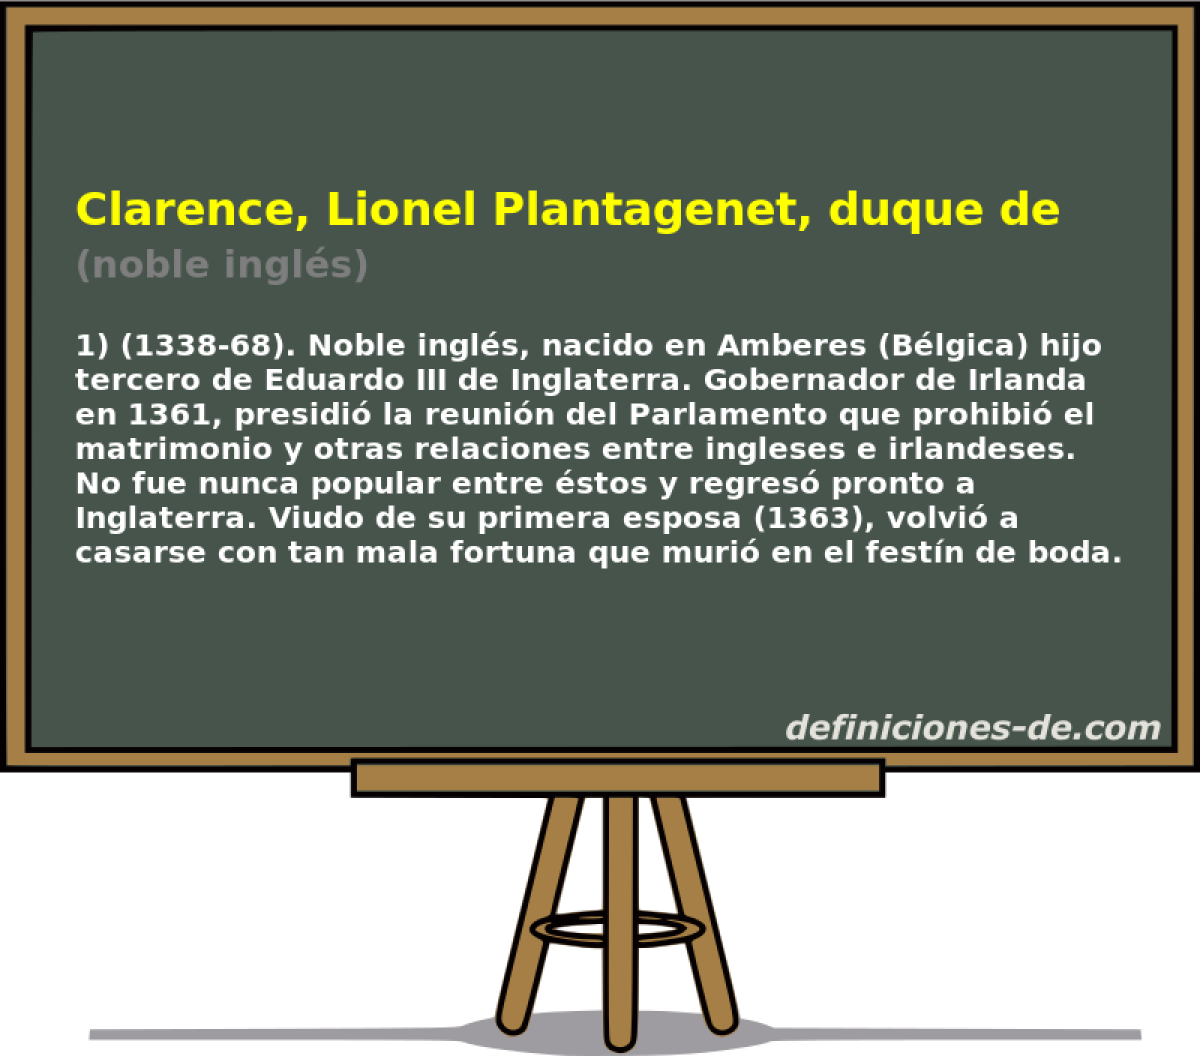 Clarence, Lionel Plantagenet, duque de (noble ingls)